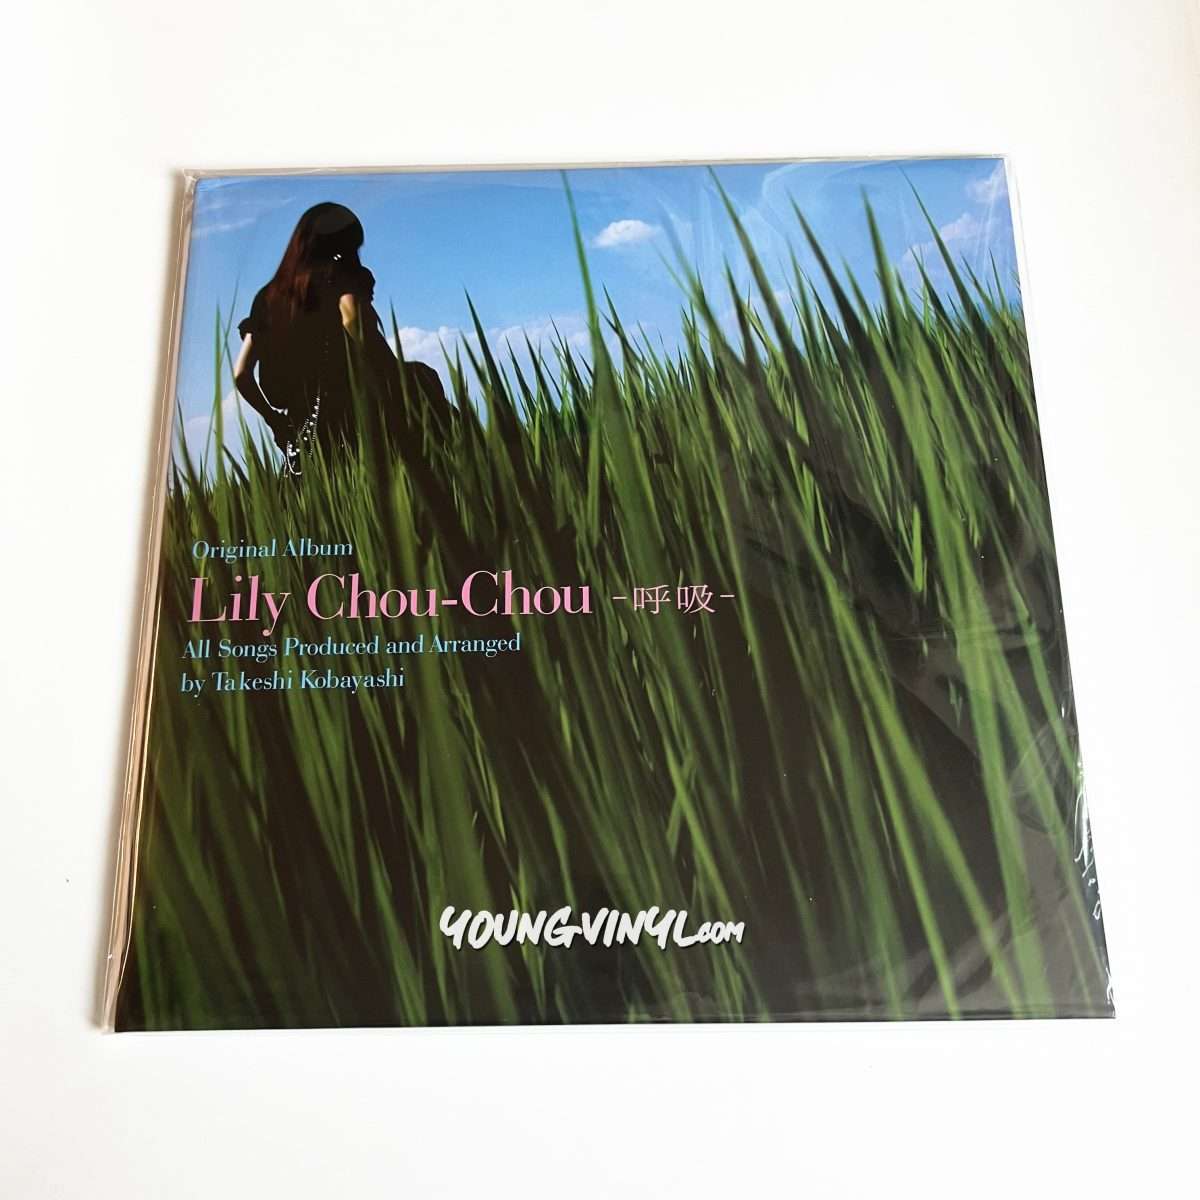 アナログ盤 リリイ・シュシュのすべて Lily Chou-Chou 呼吸 新品 - 邦楽